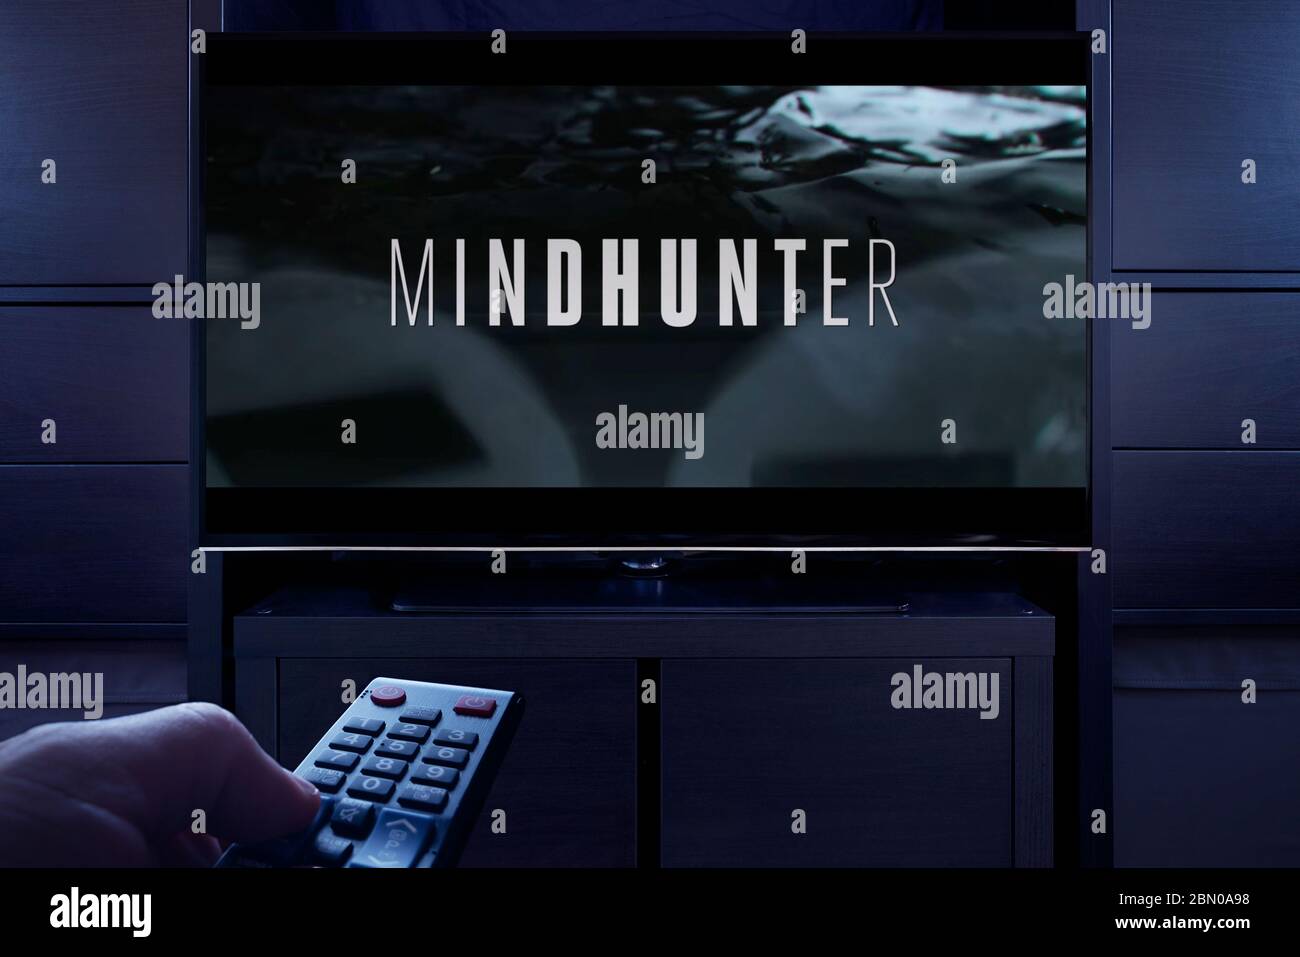 Un homme pointe une télécommande de télévision sur le téléviseur qui affiche l'écran principal de Mindhunter (usage éditorial uniquement). Banque D'Images